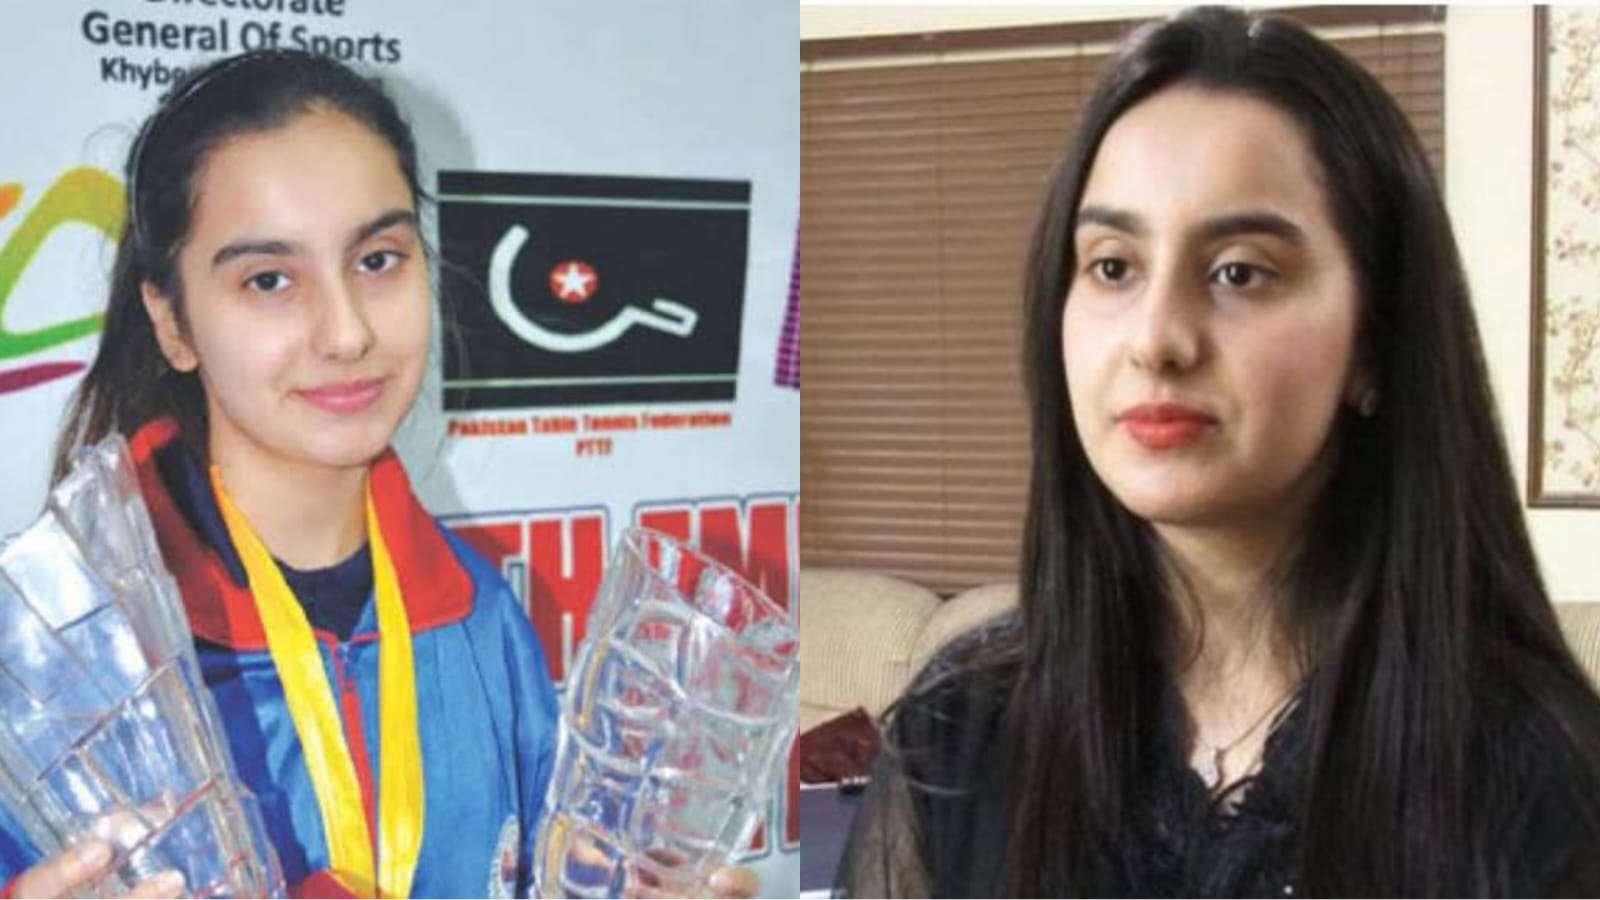 Perniya Khan wants to represent Pakistan in Paris Olympics 2024